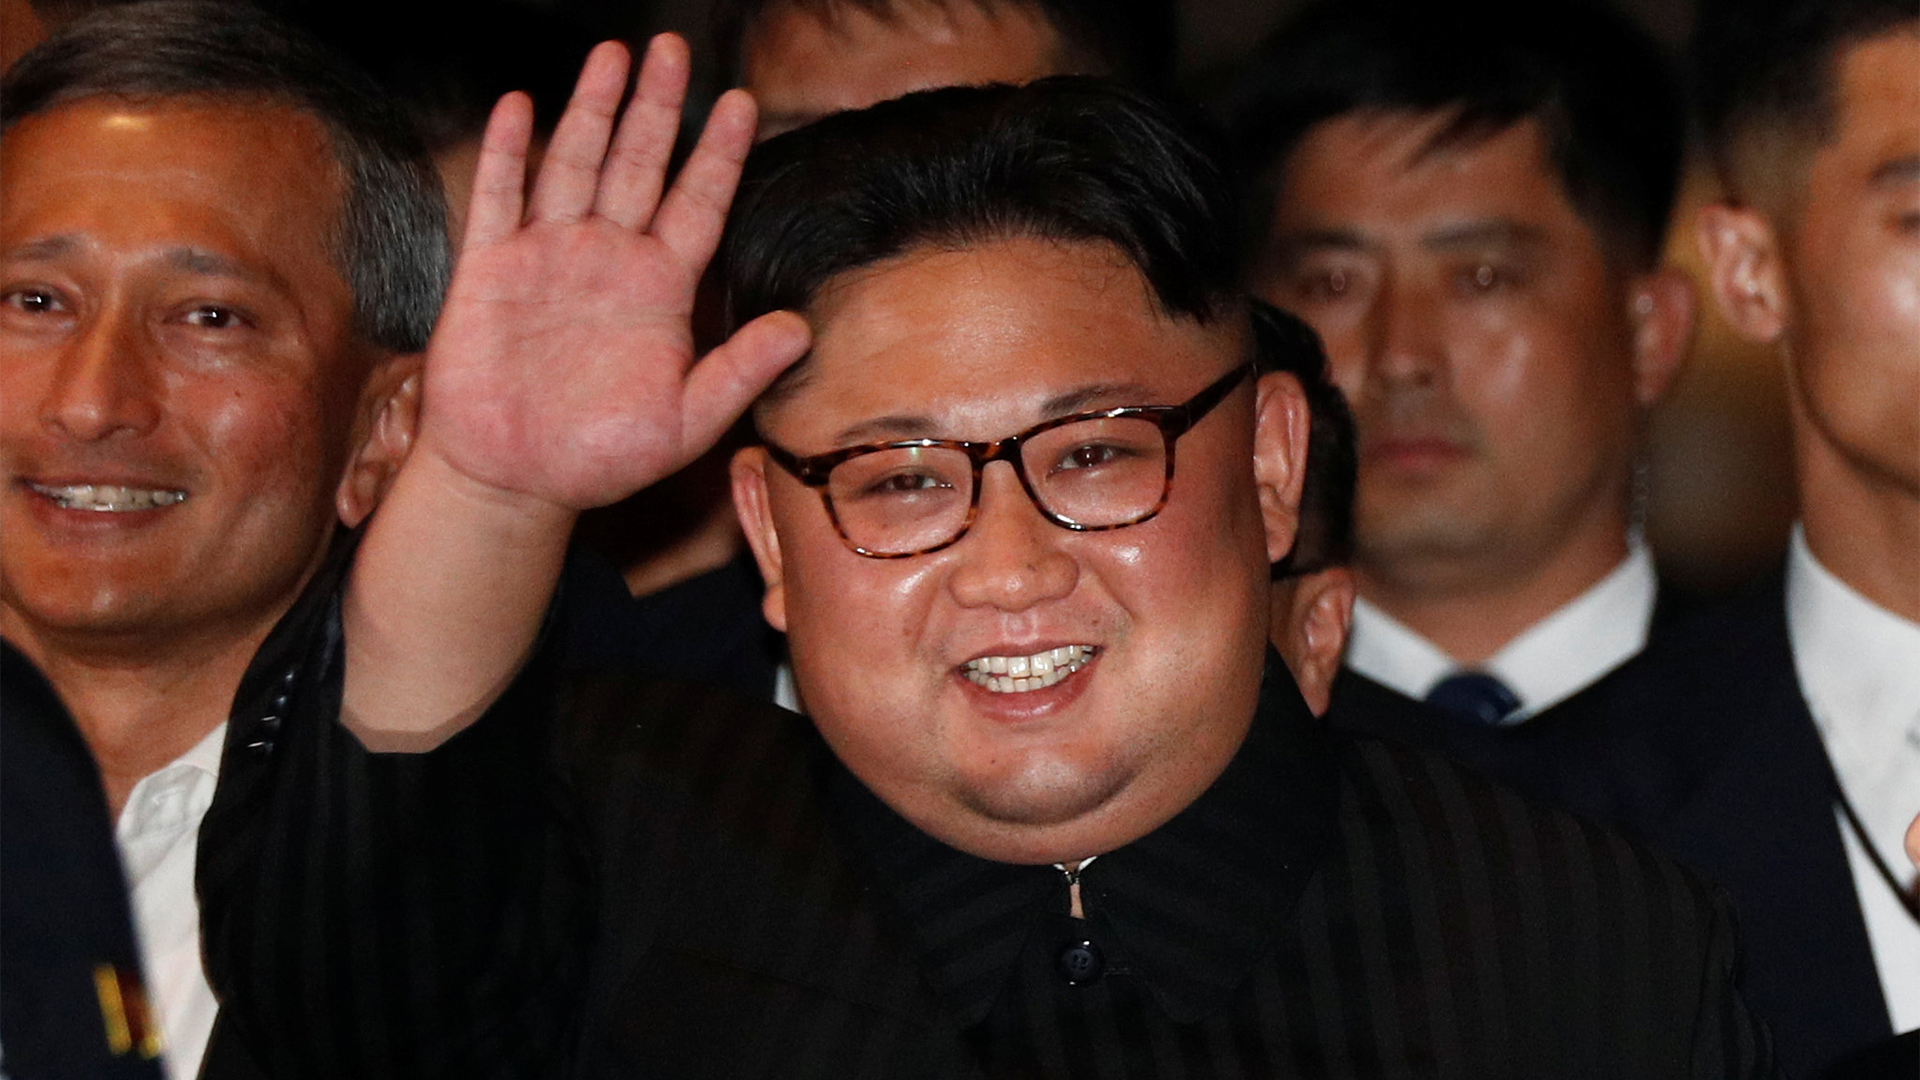 Kim Jong Un | REUTERS